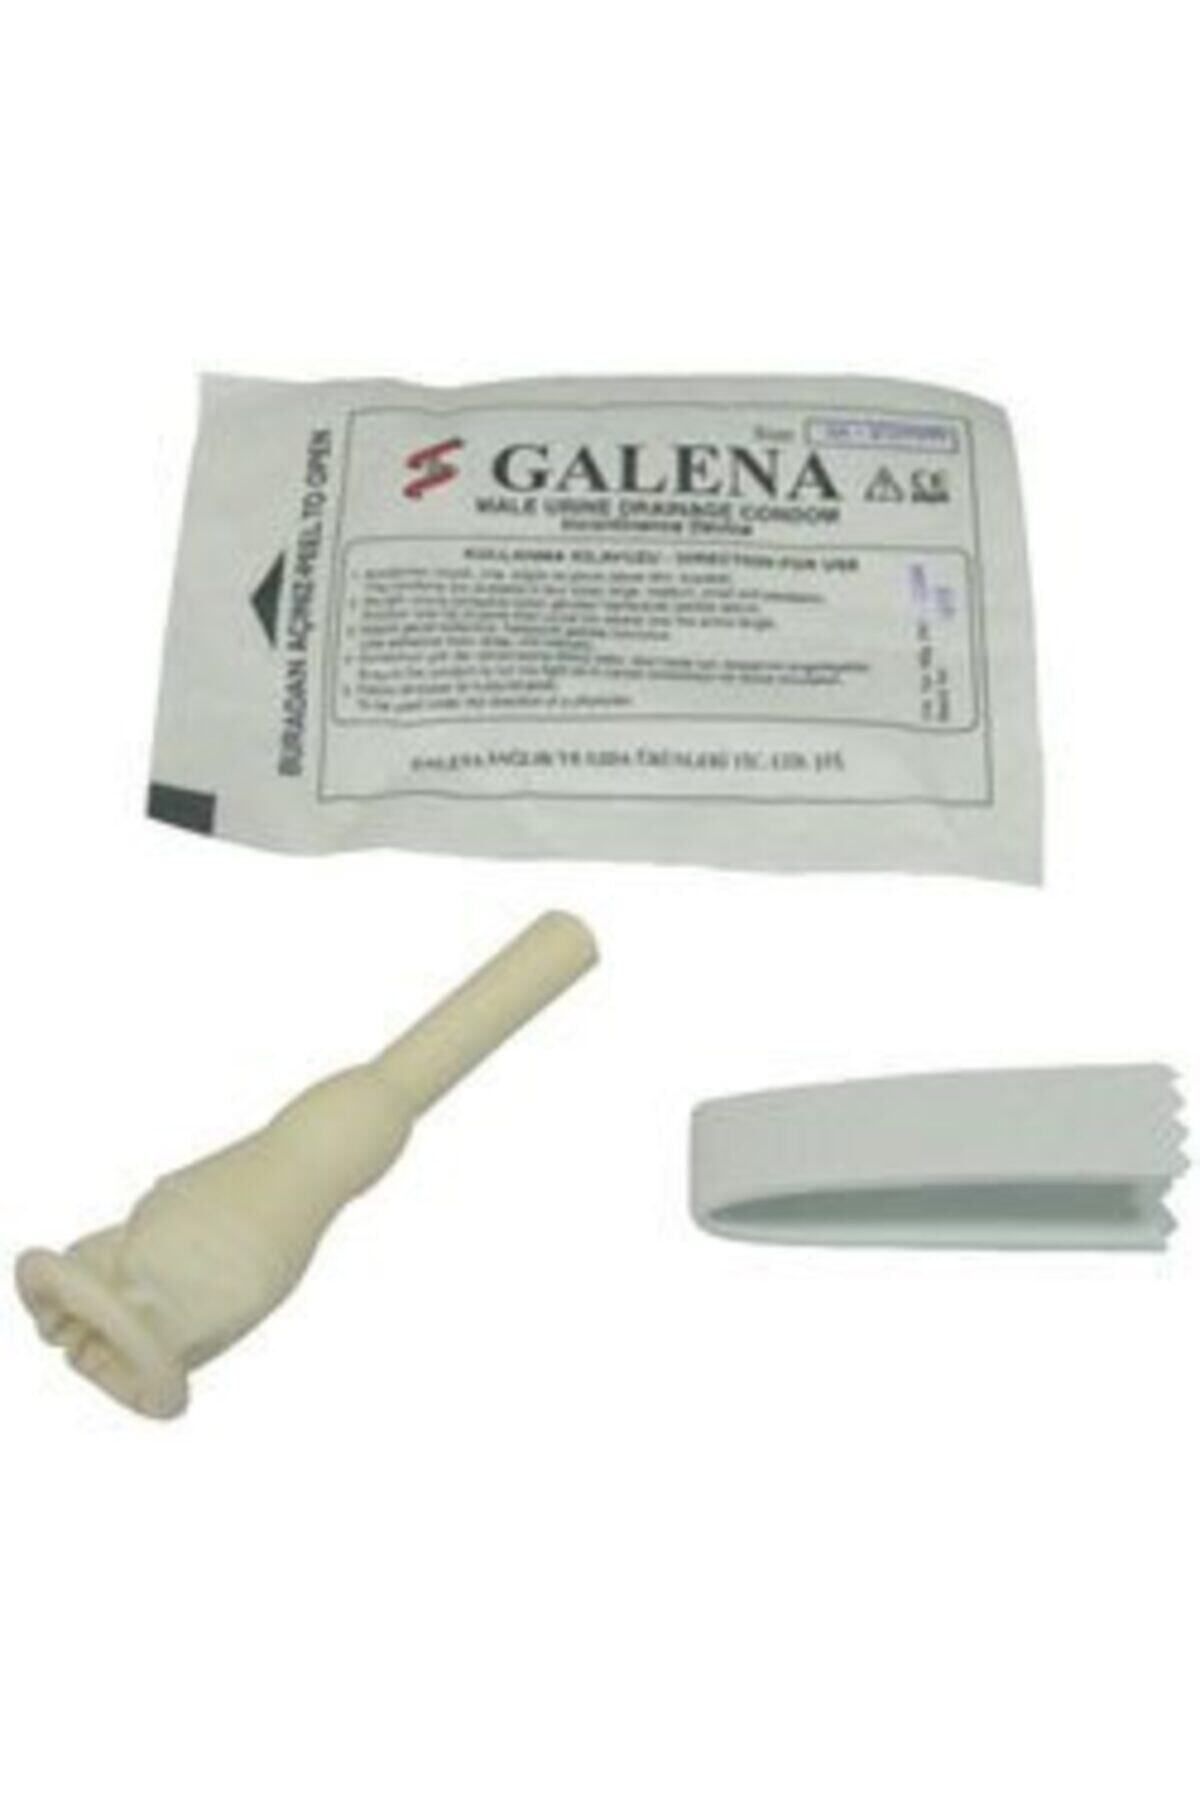 Galena Prezervatif Sonda 35mm 50 Ad.